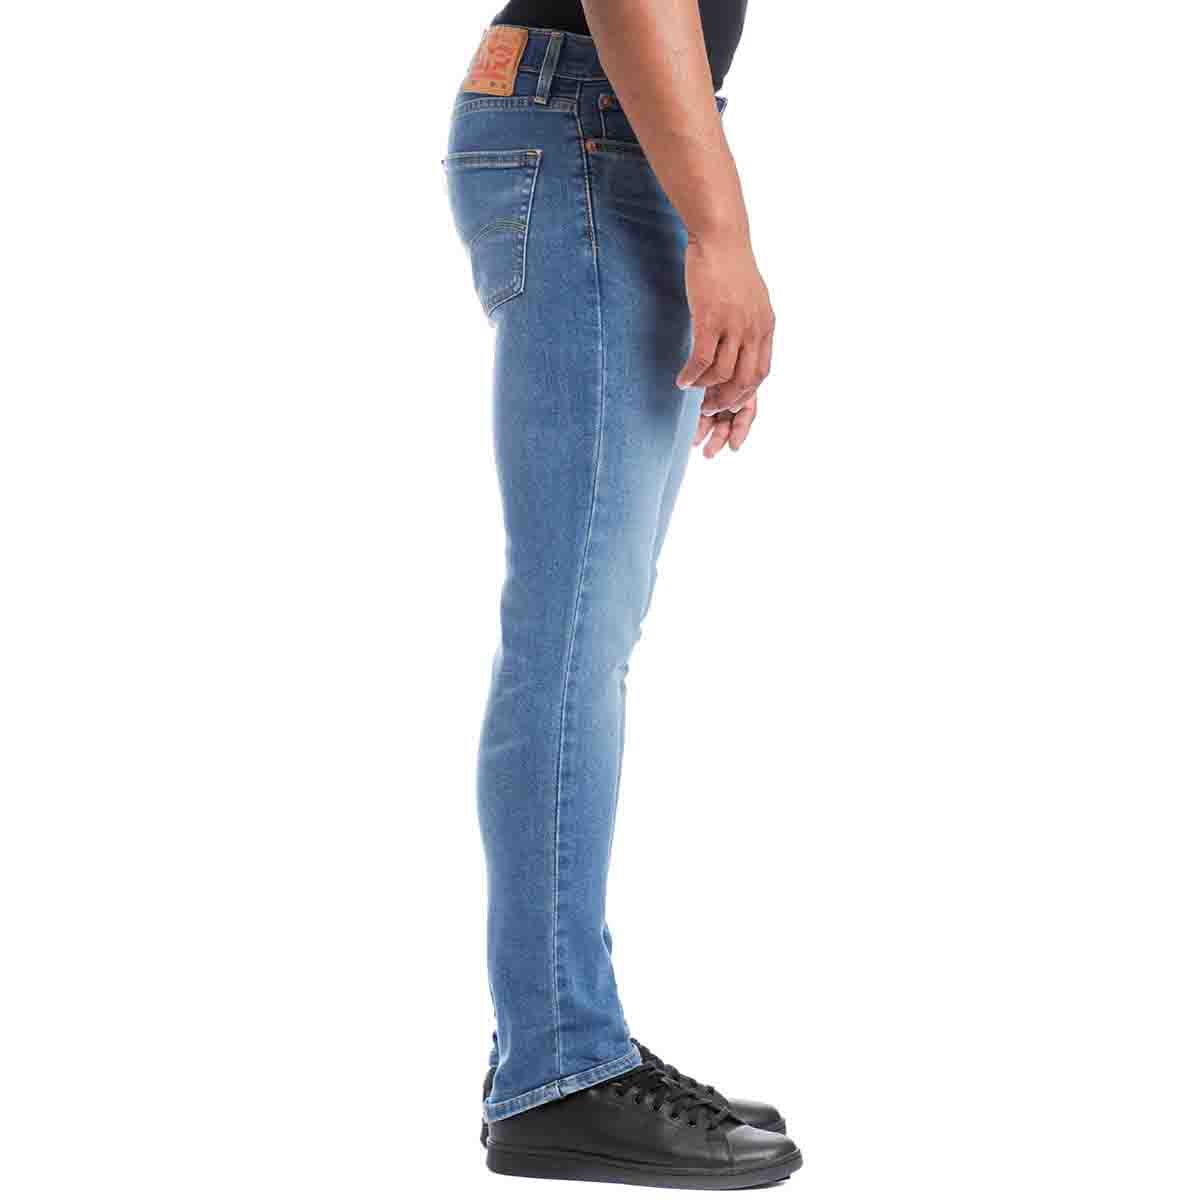 Jeans 511&trade; Slim Fit Levi's para Caballero